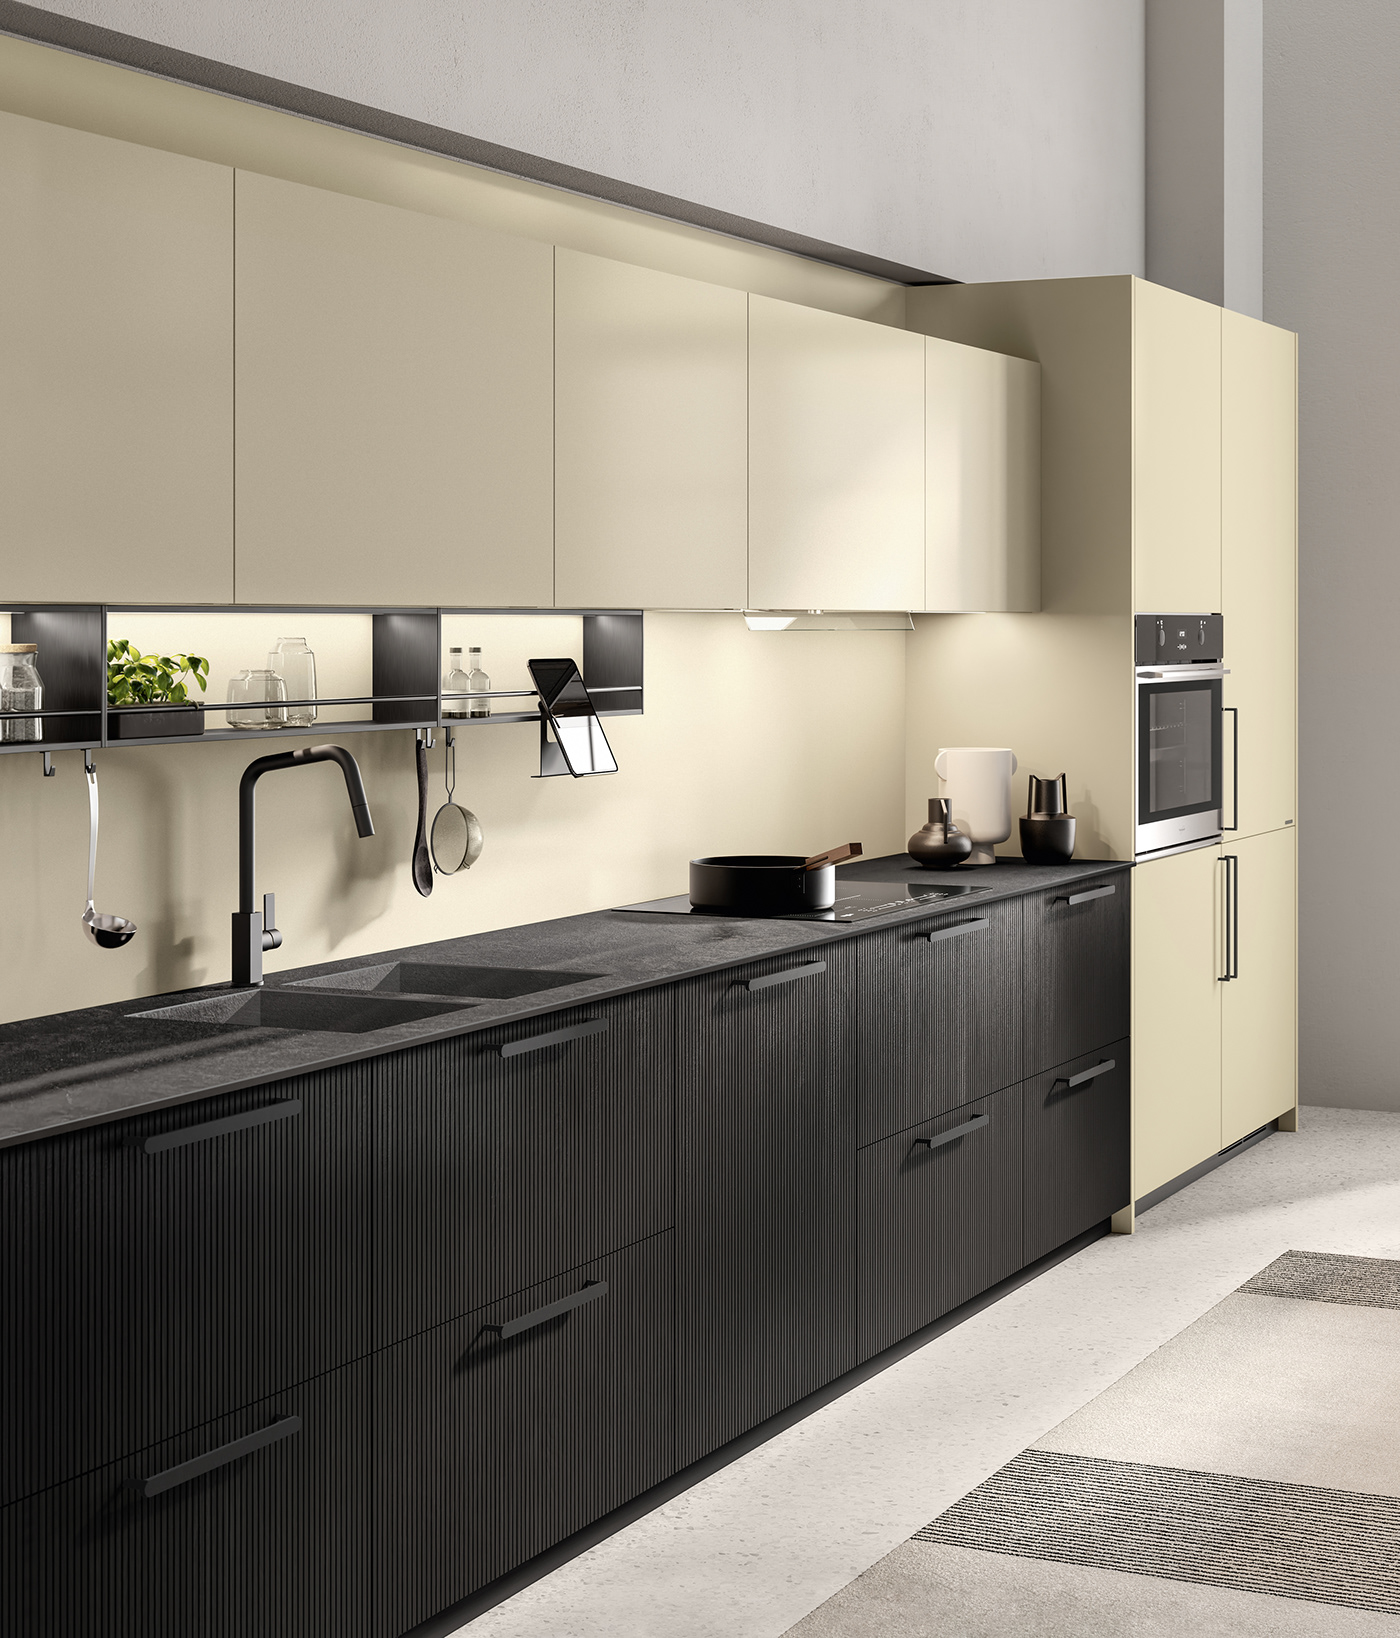 3D 3ds max architecture archviz design interior design  kitchen Render rendering visualization